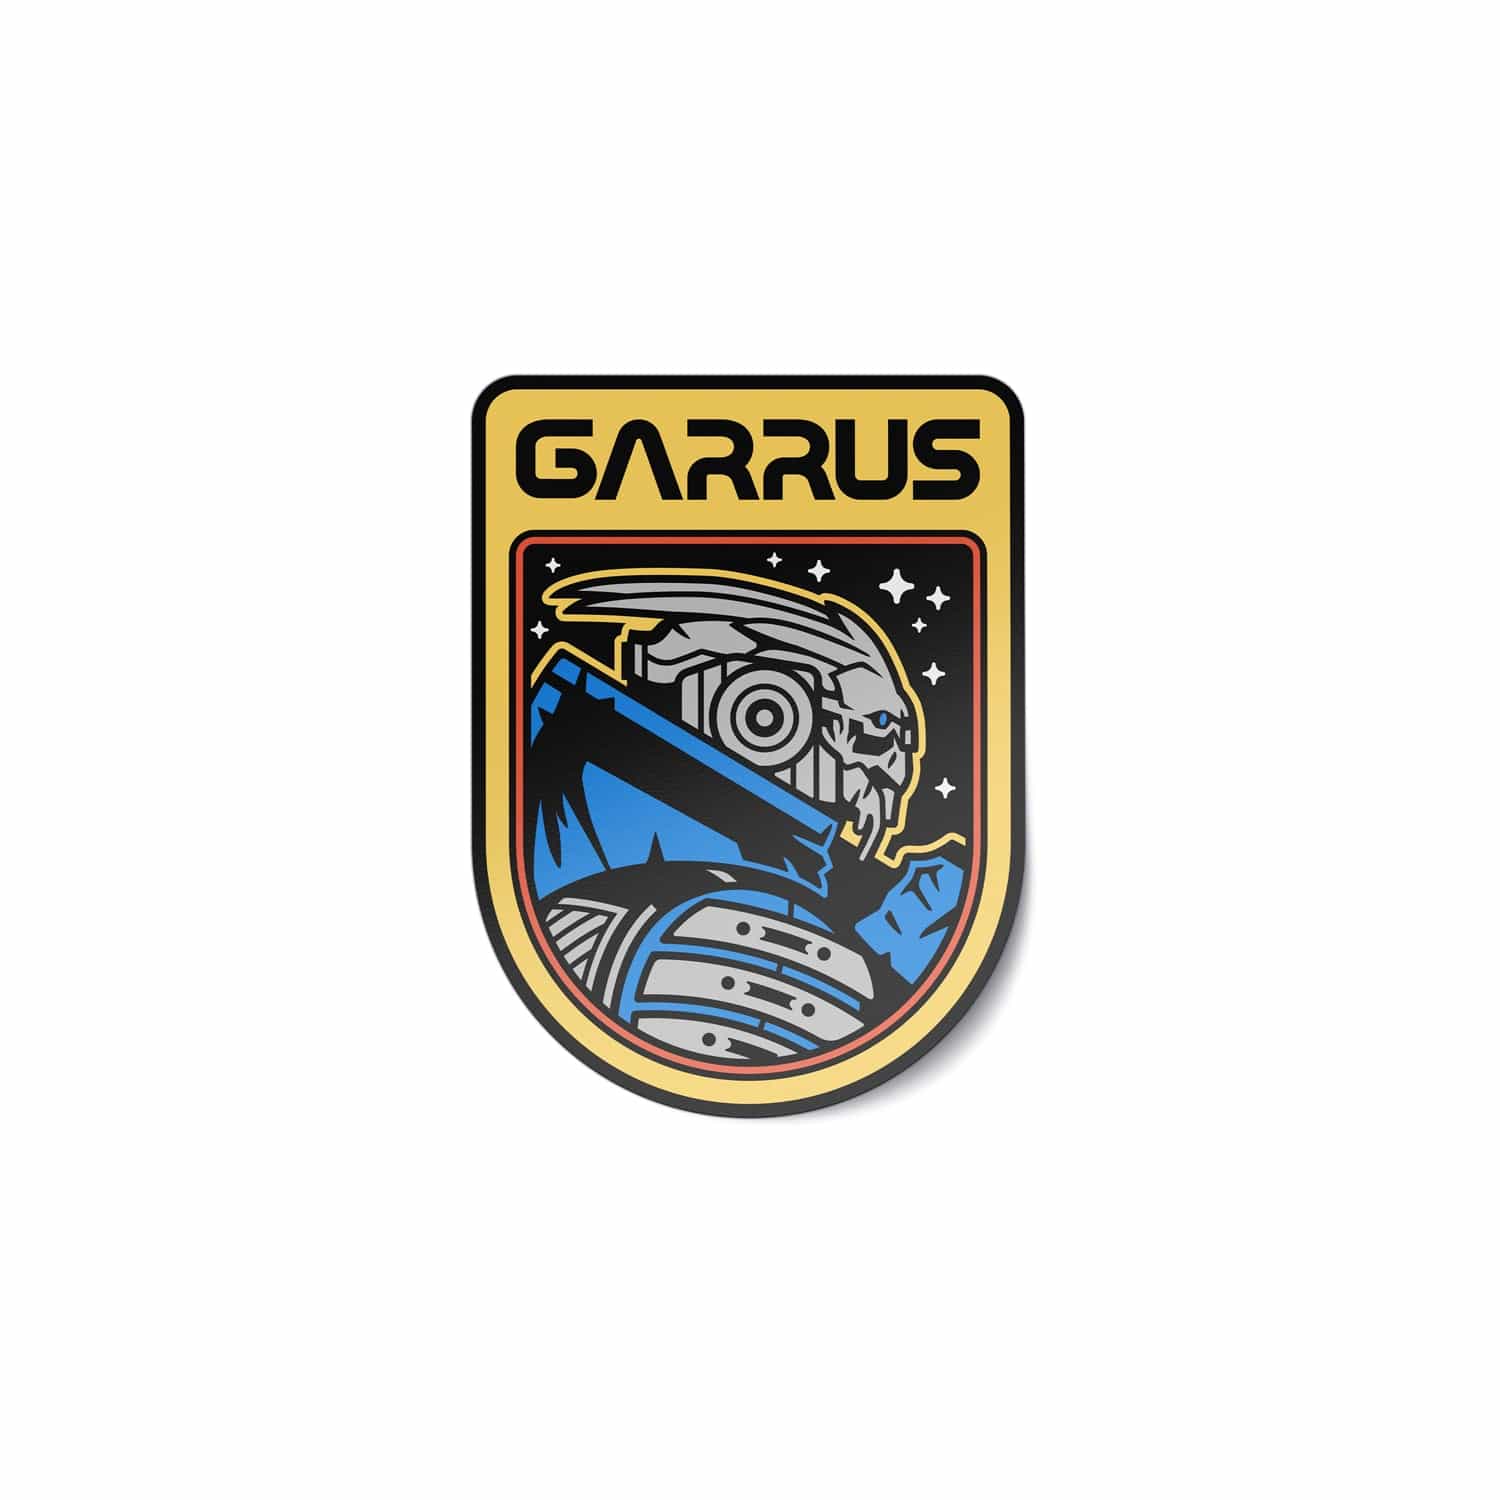 Mass Effect - Garrus Retro Vinyl Sticker